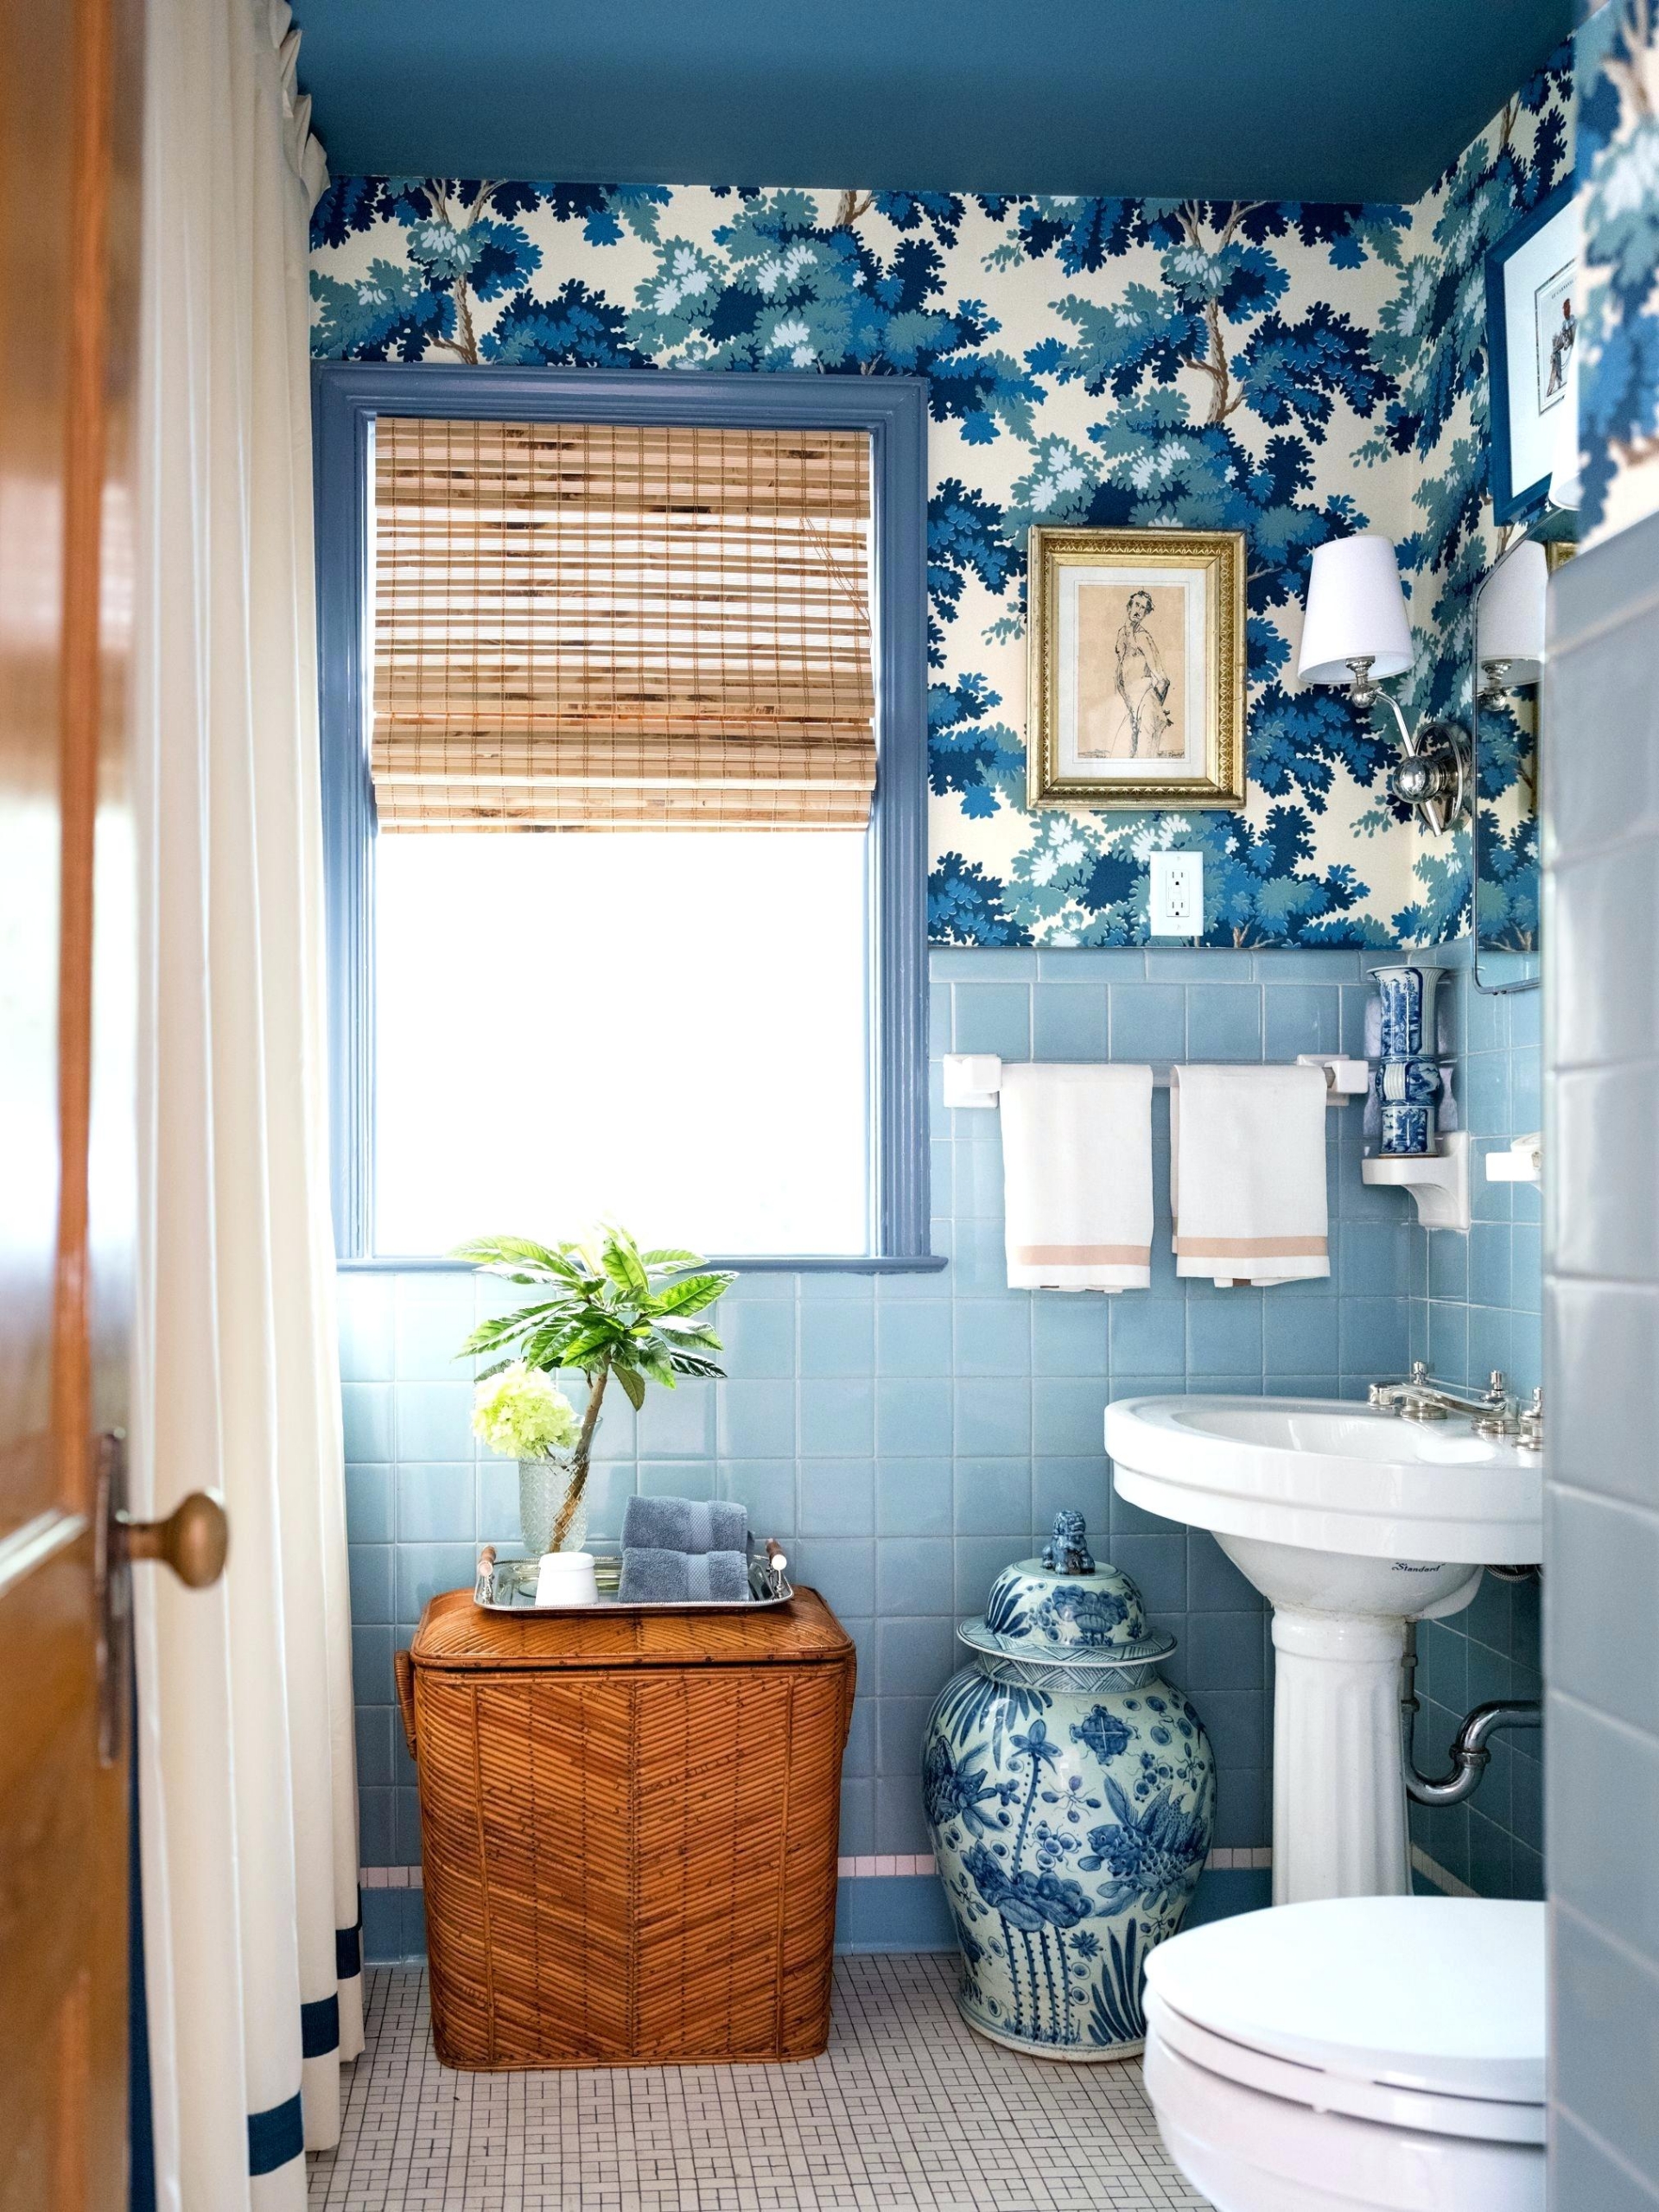 Sắc xanh lam đậm của giấy dán tường phối hợp cùng gạch ốp màu xanh lam nhạt thêm vào sự điểm tô của những món đồ bằng gốm sứ 'tone sur tone' tạo cho phòng tắm hiệu ứng thẩm mỹ vô cùng đẹp mắt.